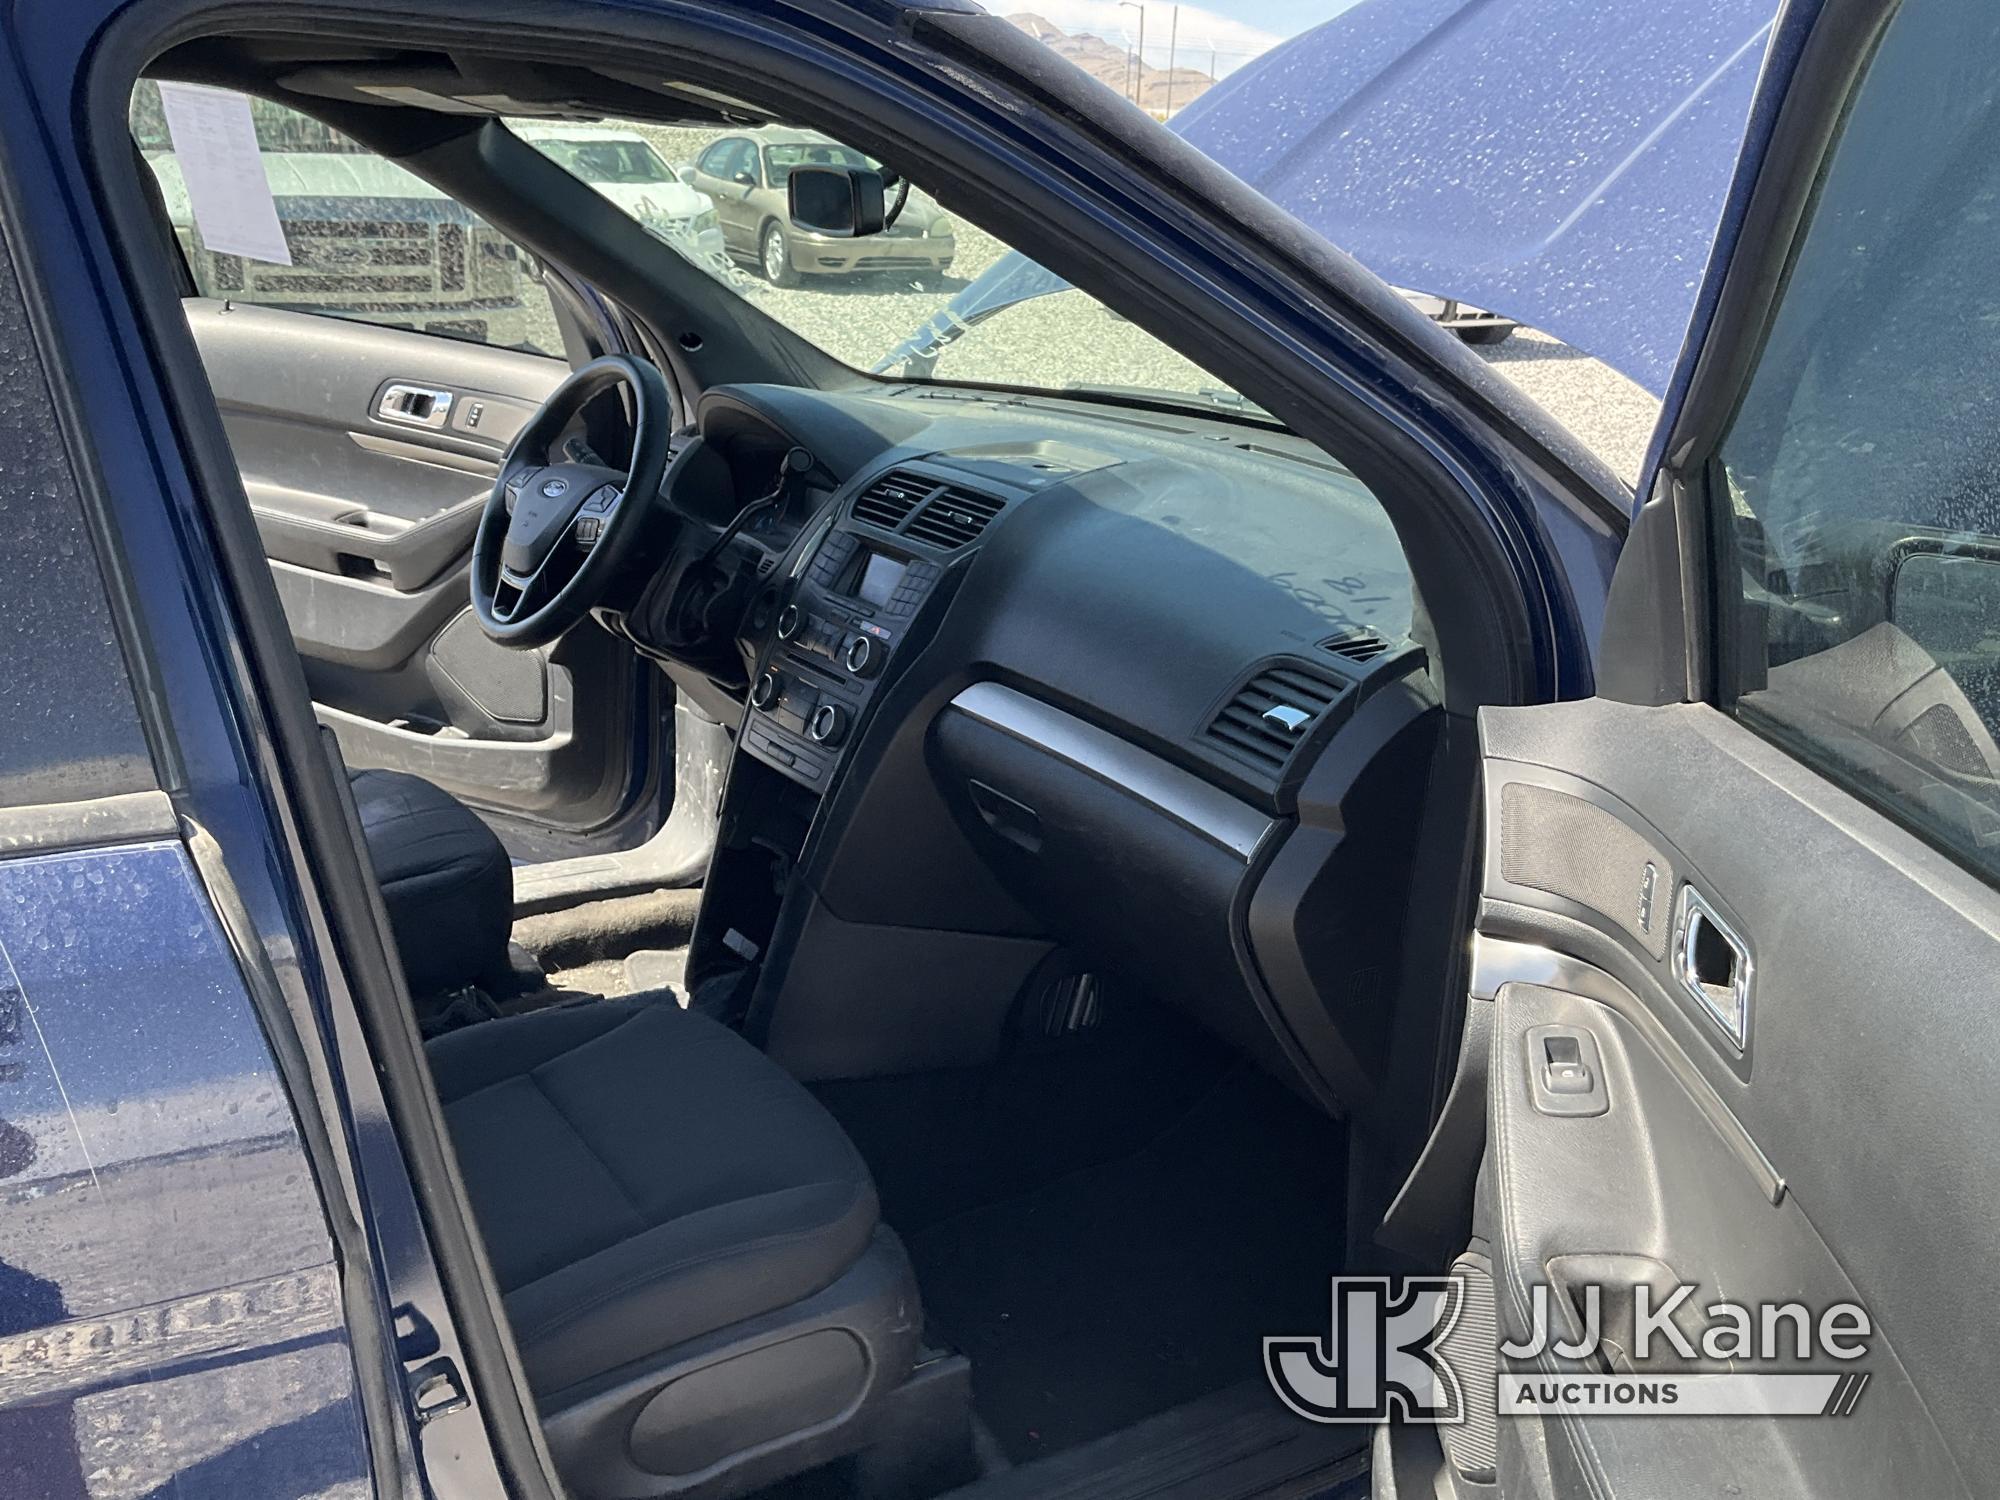 (Las Vegas, NV) 2018 Ford Explorer AWD Police Interceptor No Console Body Damage, Check Engine Light